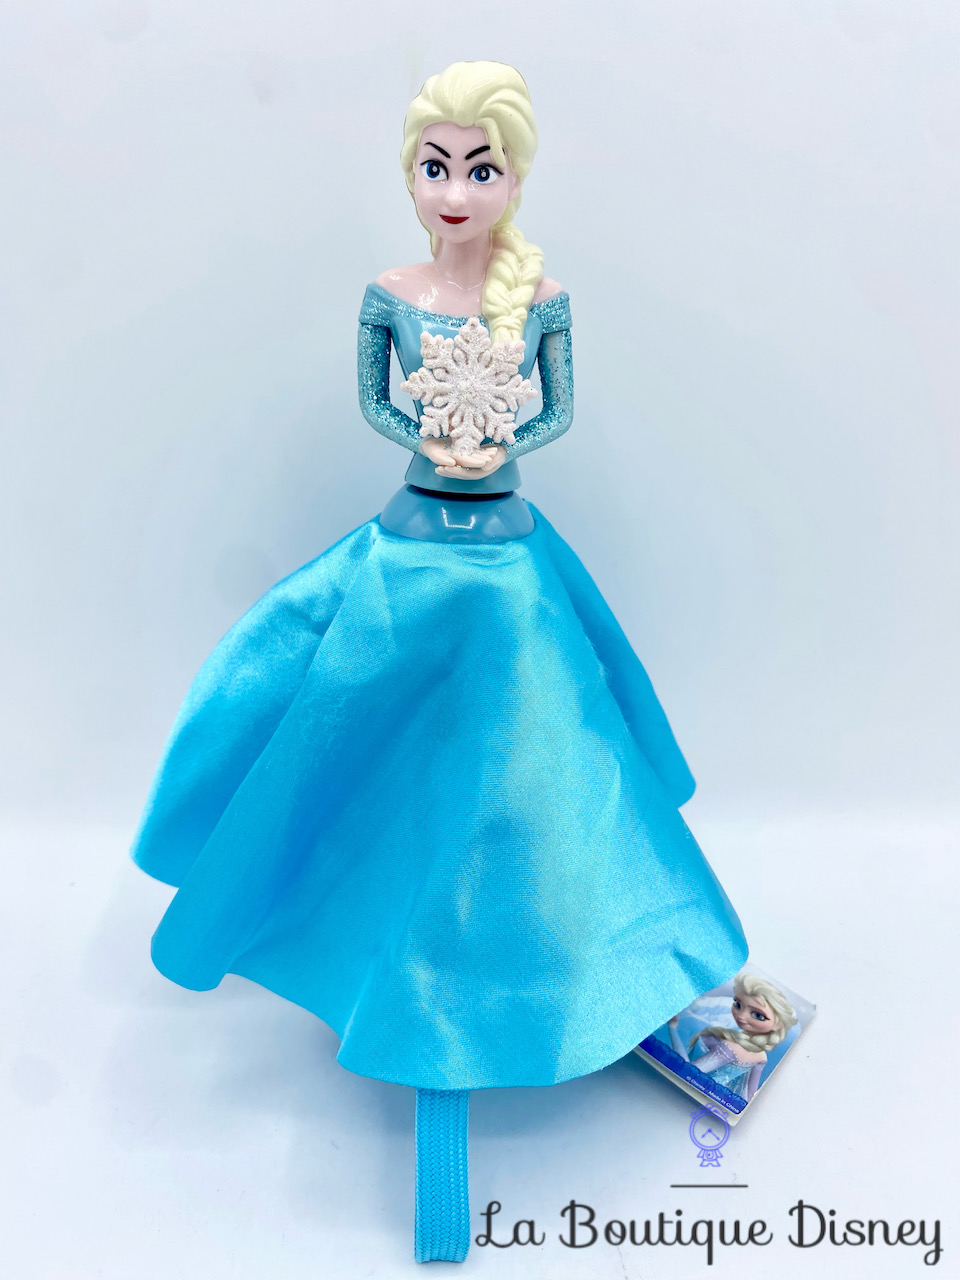 Poupée Elsa Disney Store 2020 La reine des neiges robe paillettes bleu